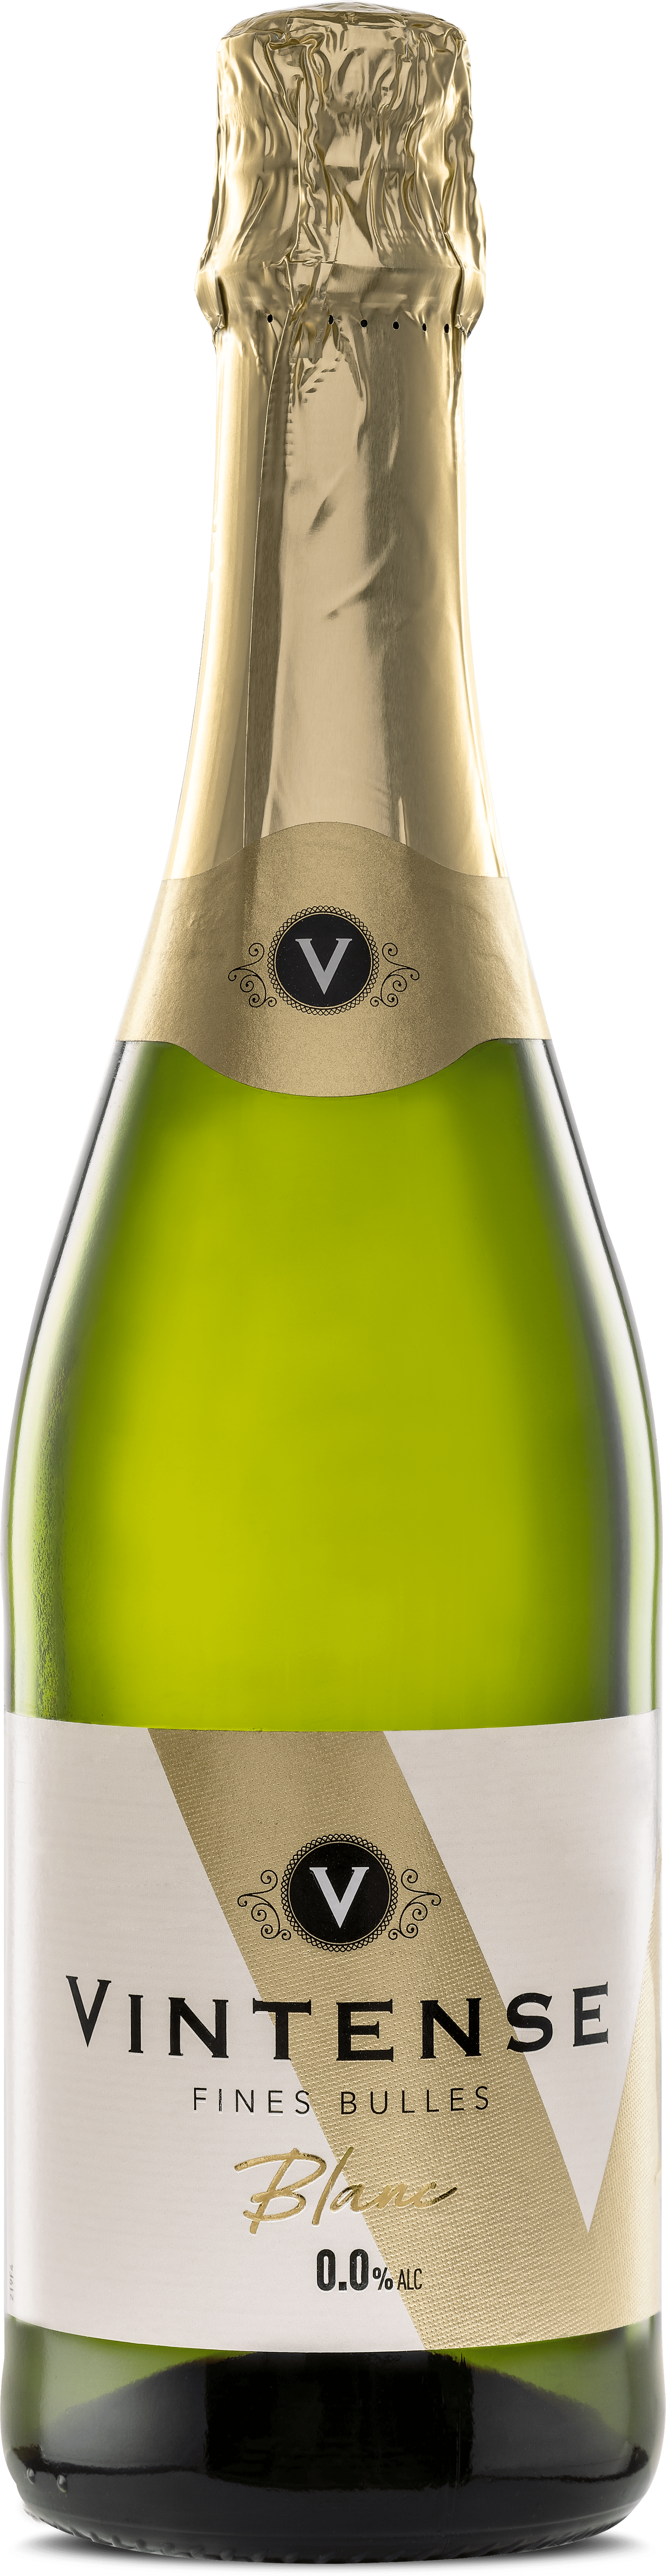 Les Bulles de Vincent - vin effervescent sans alcool 0,3°